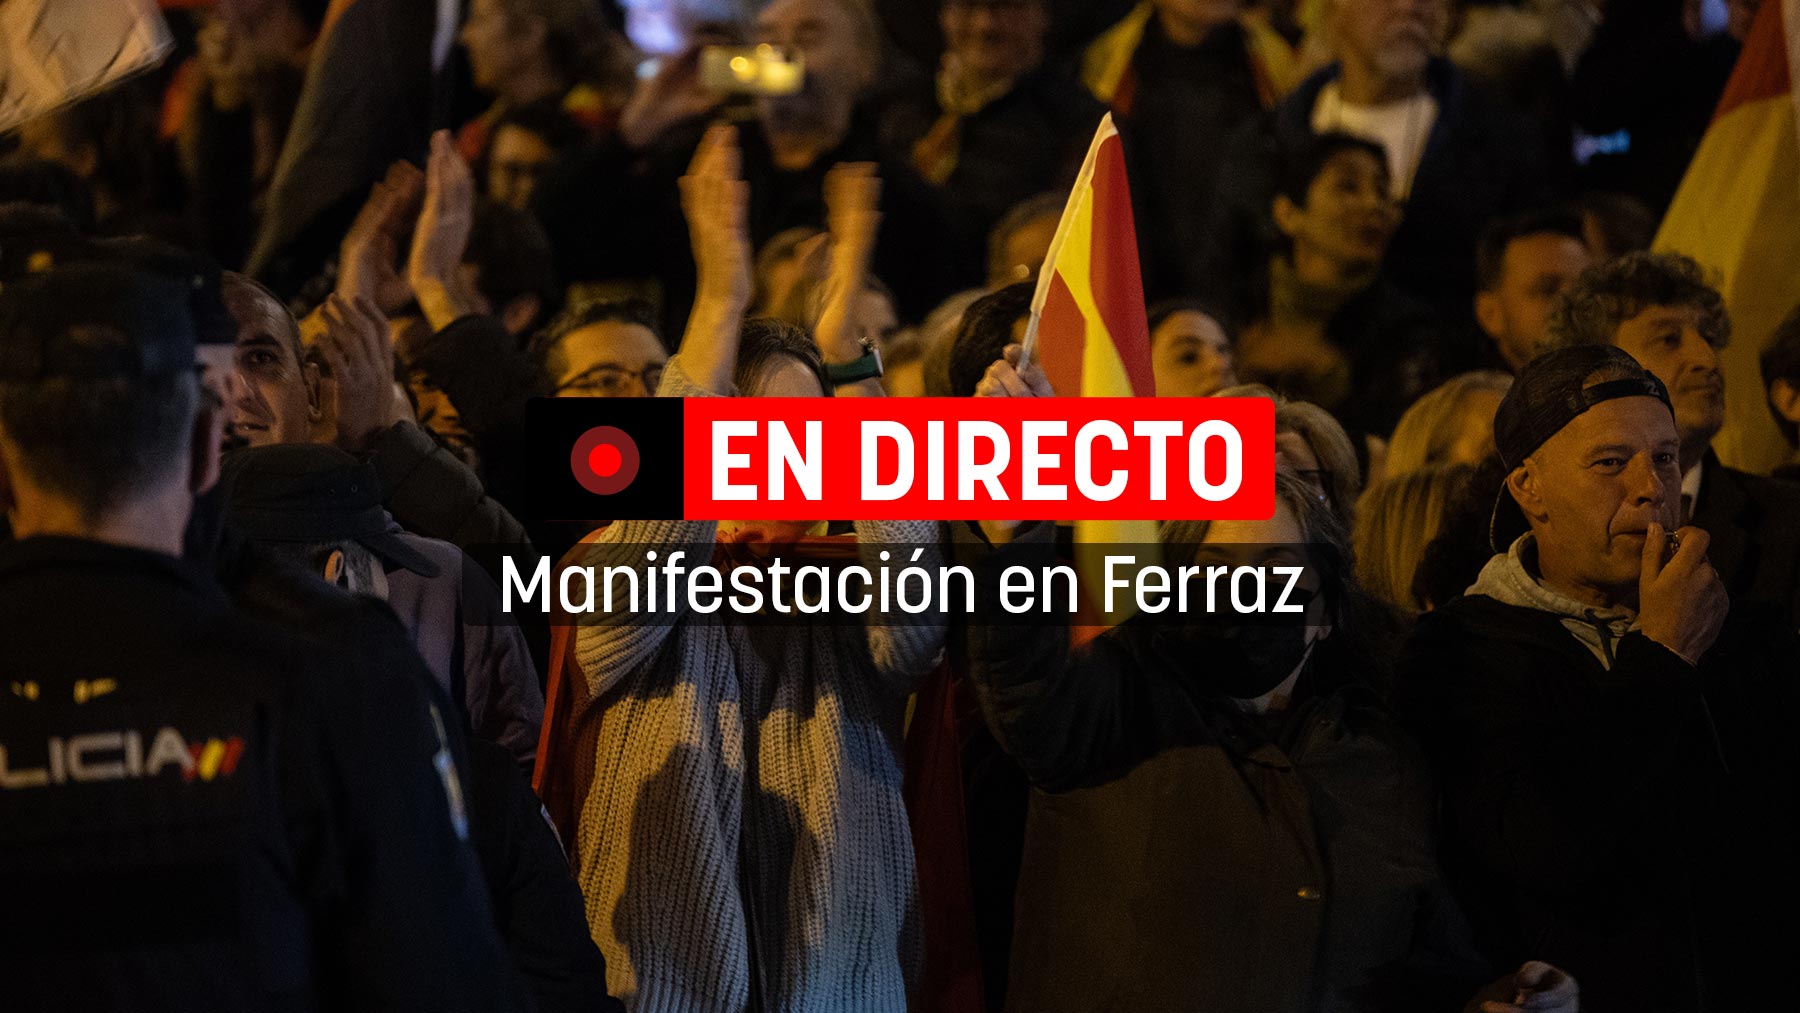 Sigue en vivo las protestas contra Pedro Sánchez hoy en Ferraz | Última hora de la manifestación contra la amnistía en Madrid